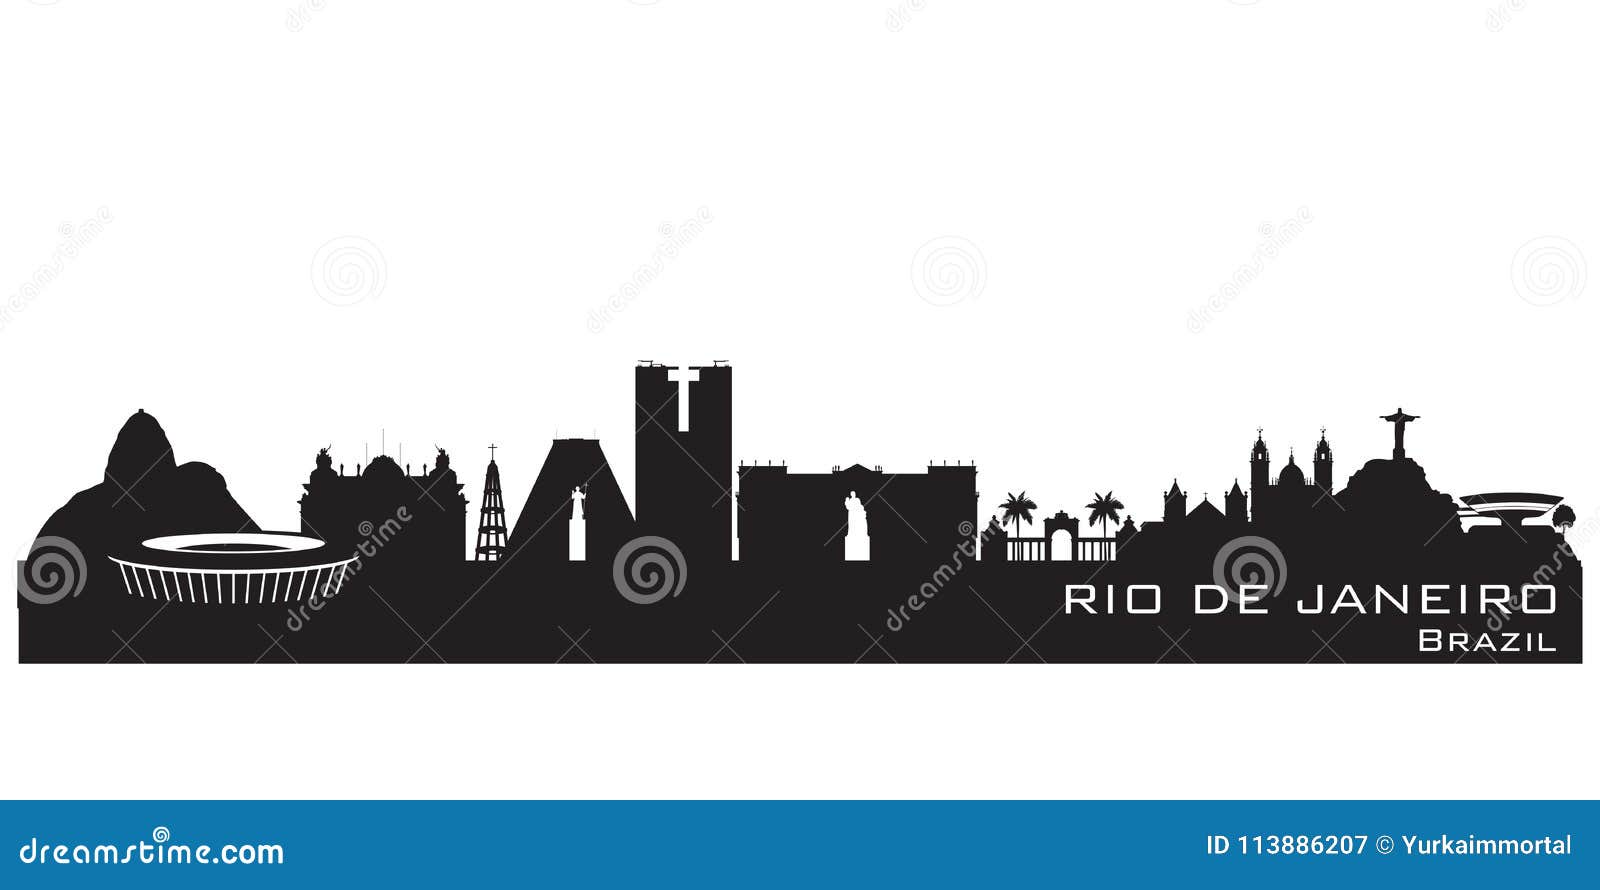 rio de janeiro brazil city skyline  silhouette